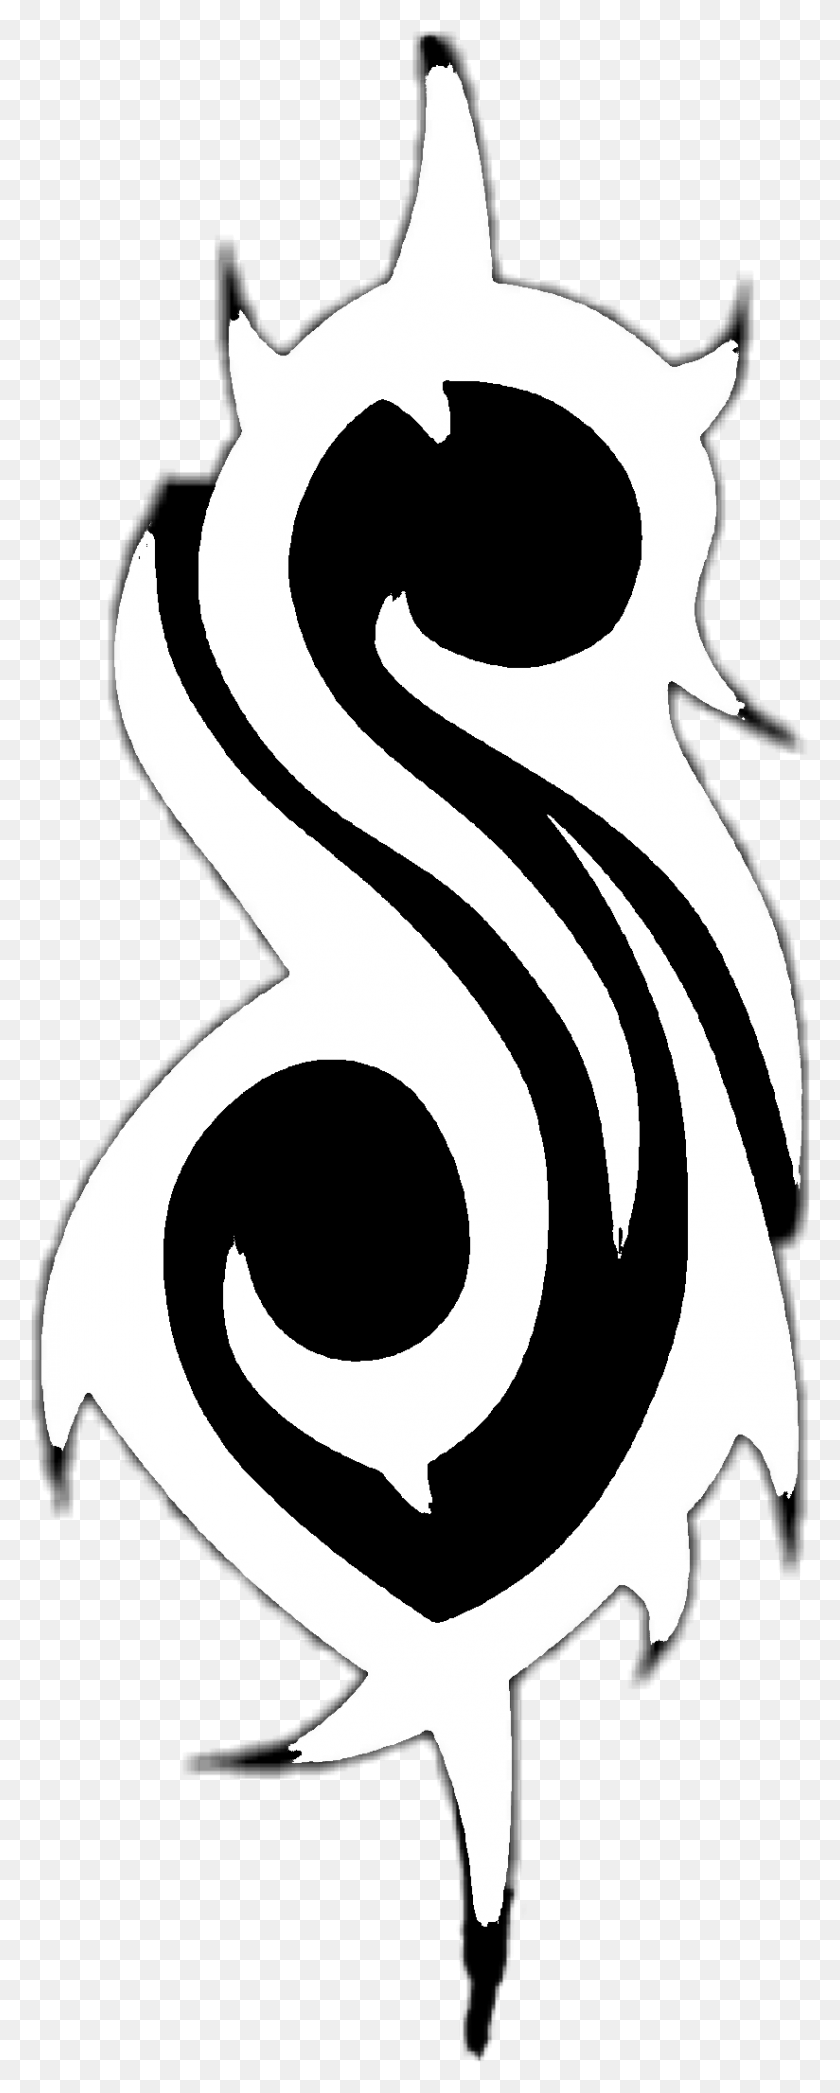 824x2148 Slipknot Logo Slipknotlogo Slipknot Logo Blanco Transparente, Plantilla, Arma, Arma Hd Png